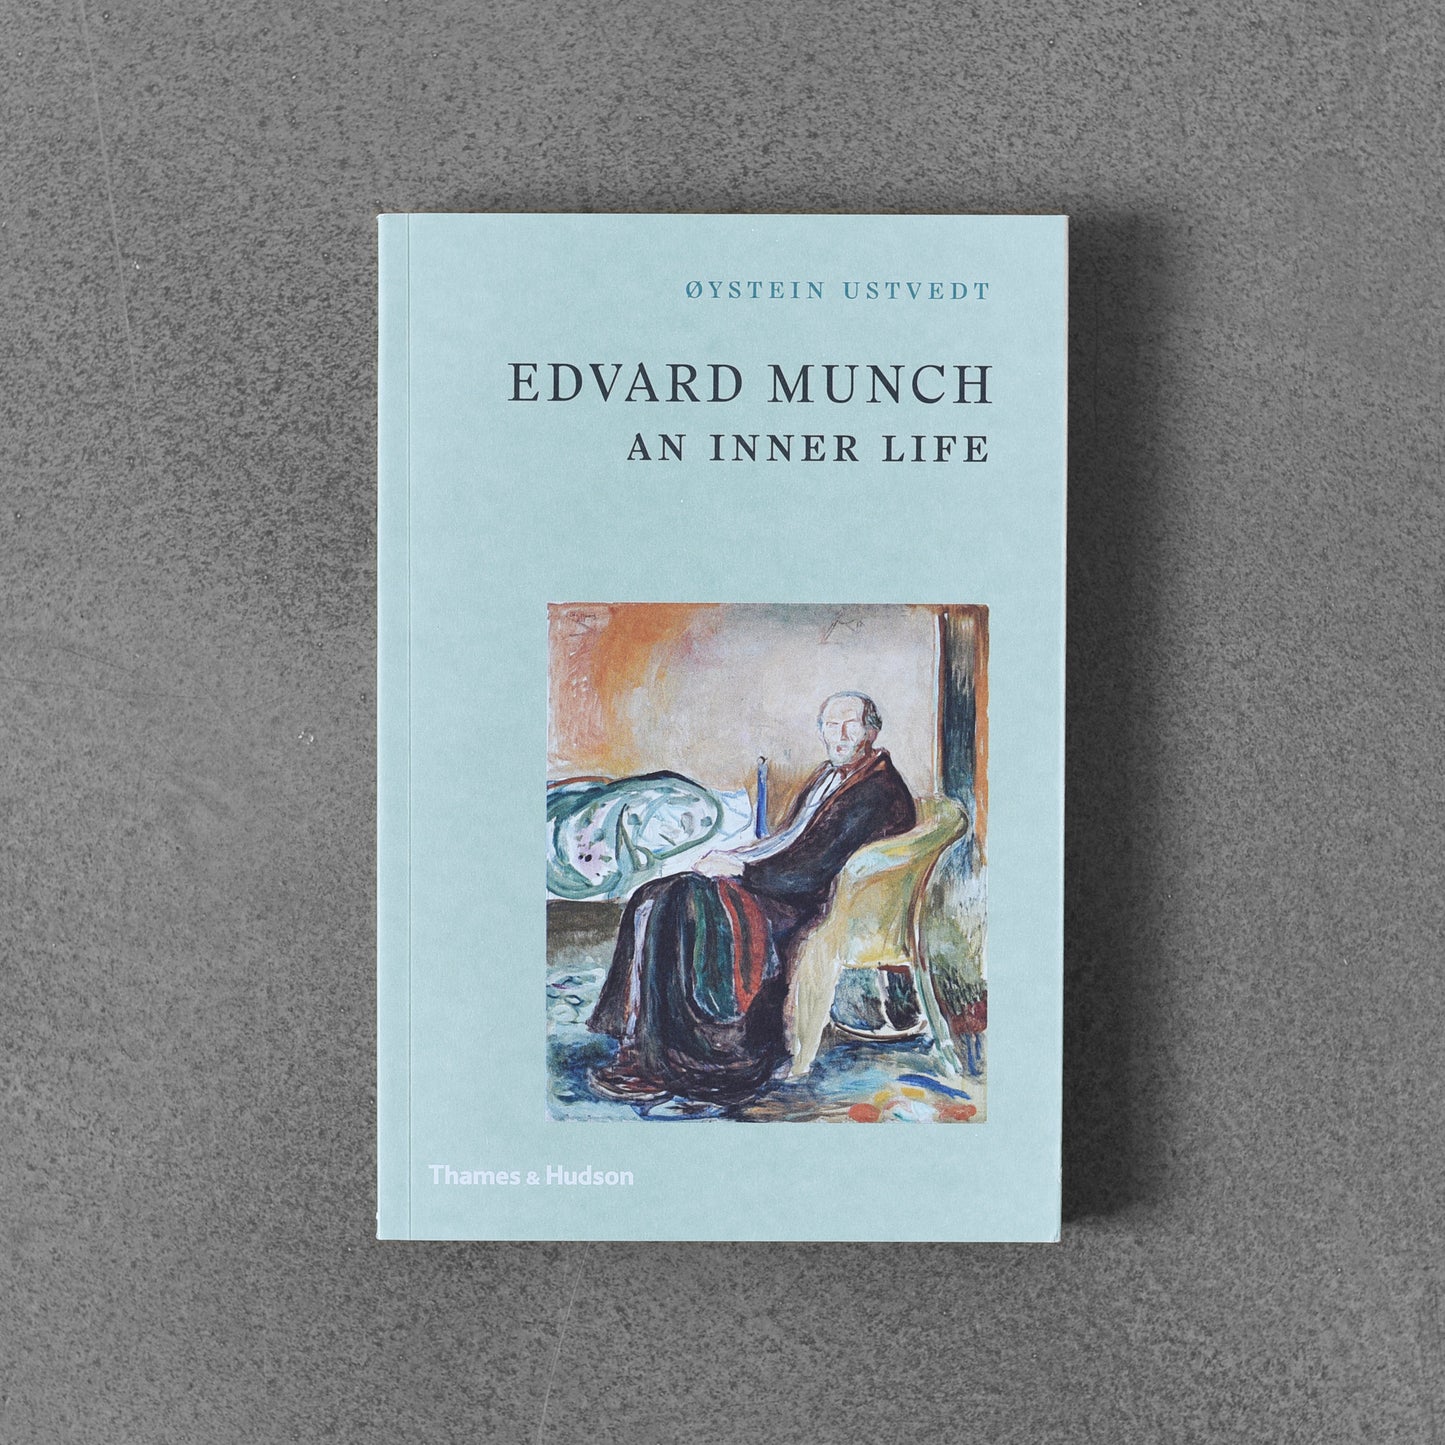 Edvard Munch: An Inner Life - Oysten Ustvedt